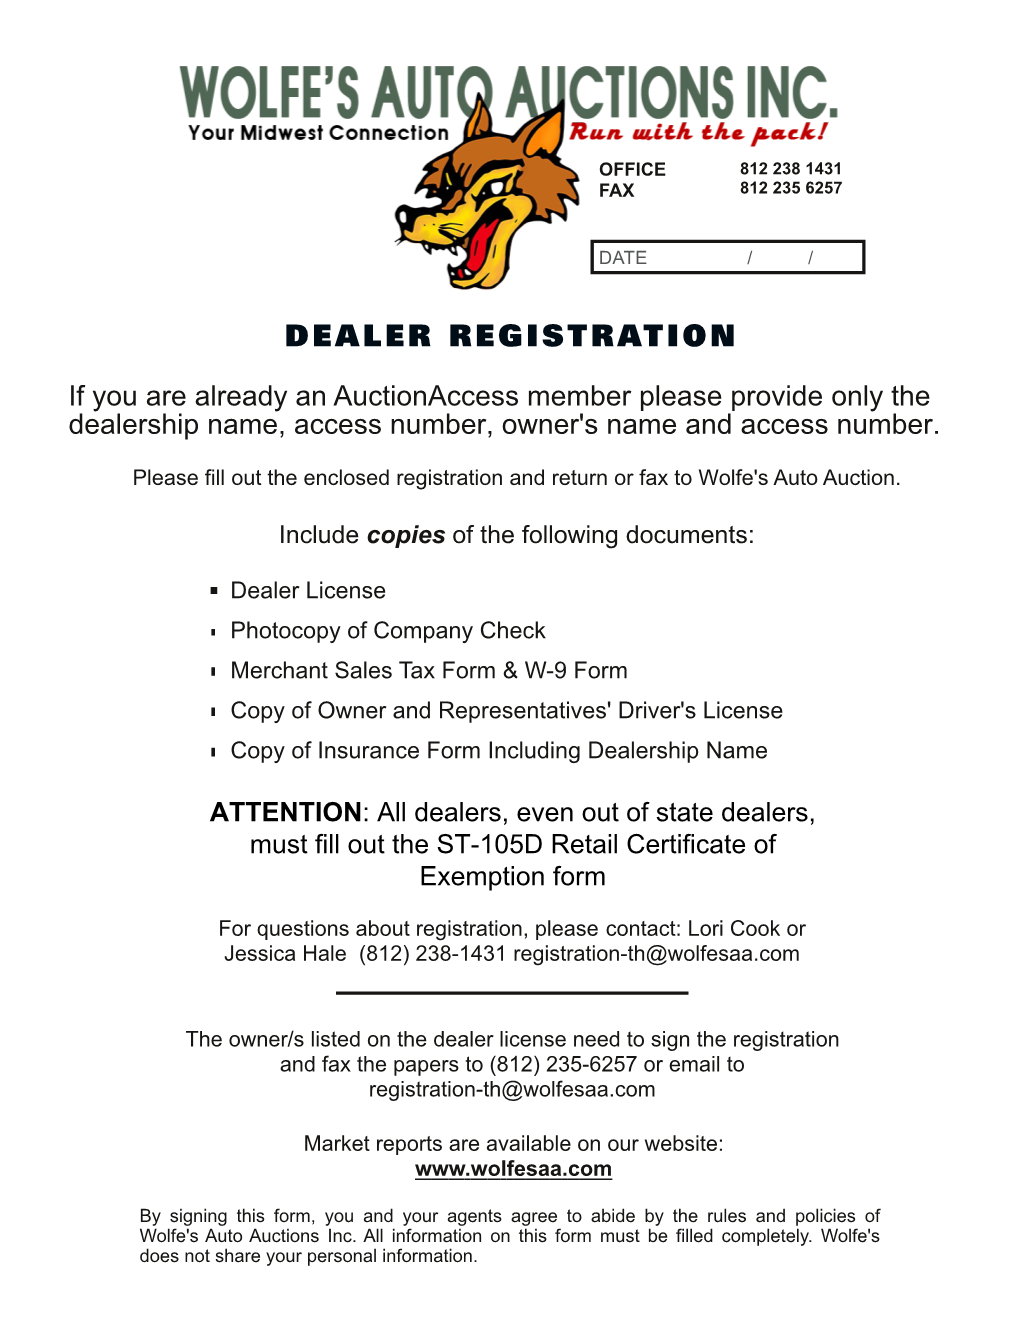 Dealer Registration